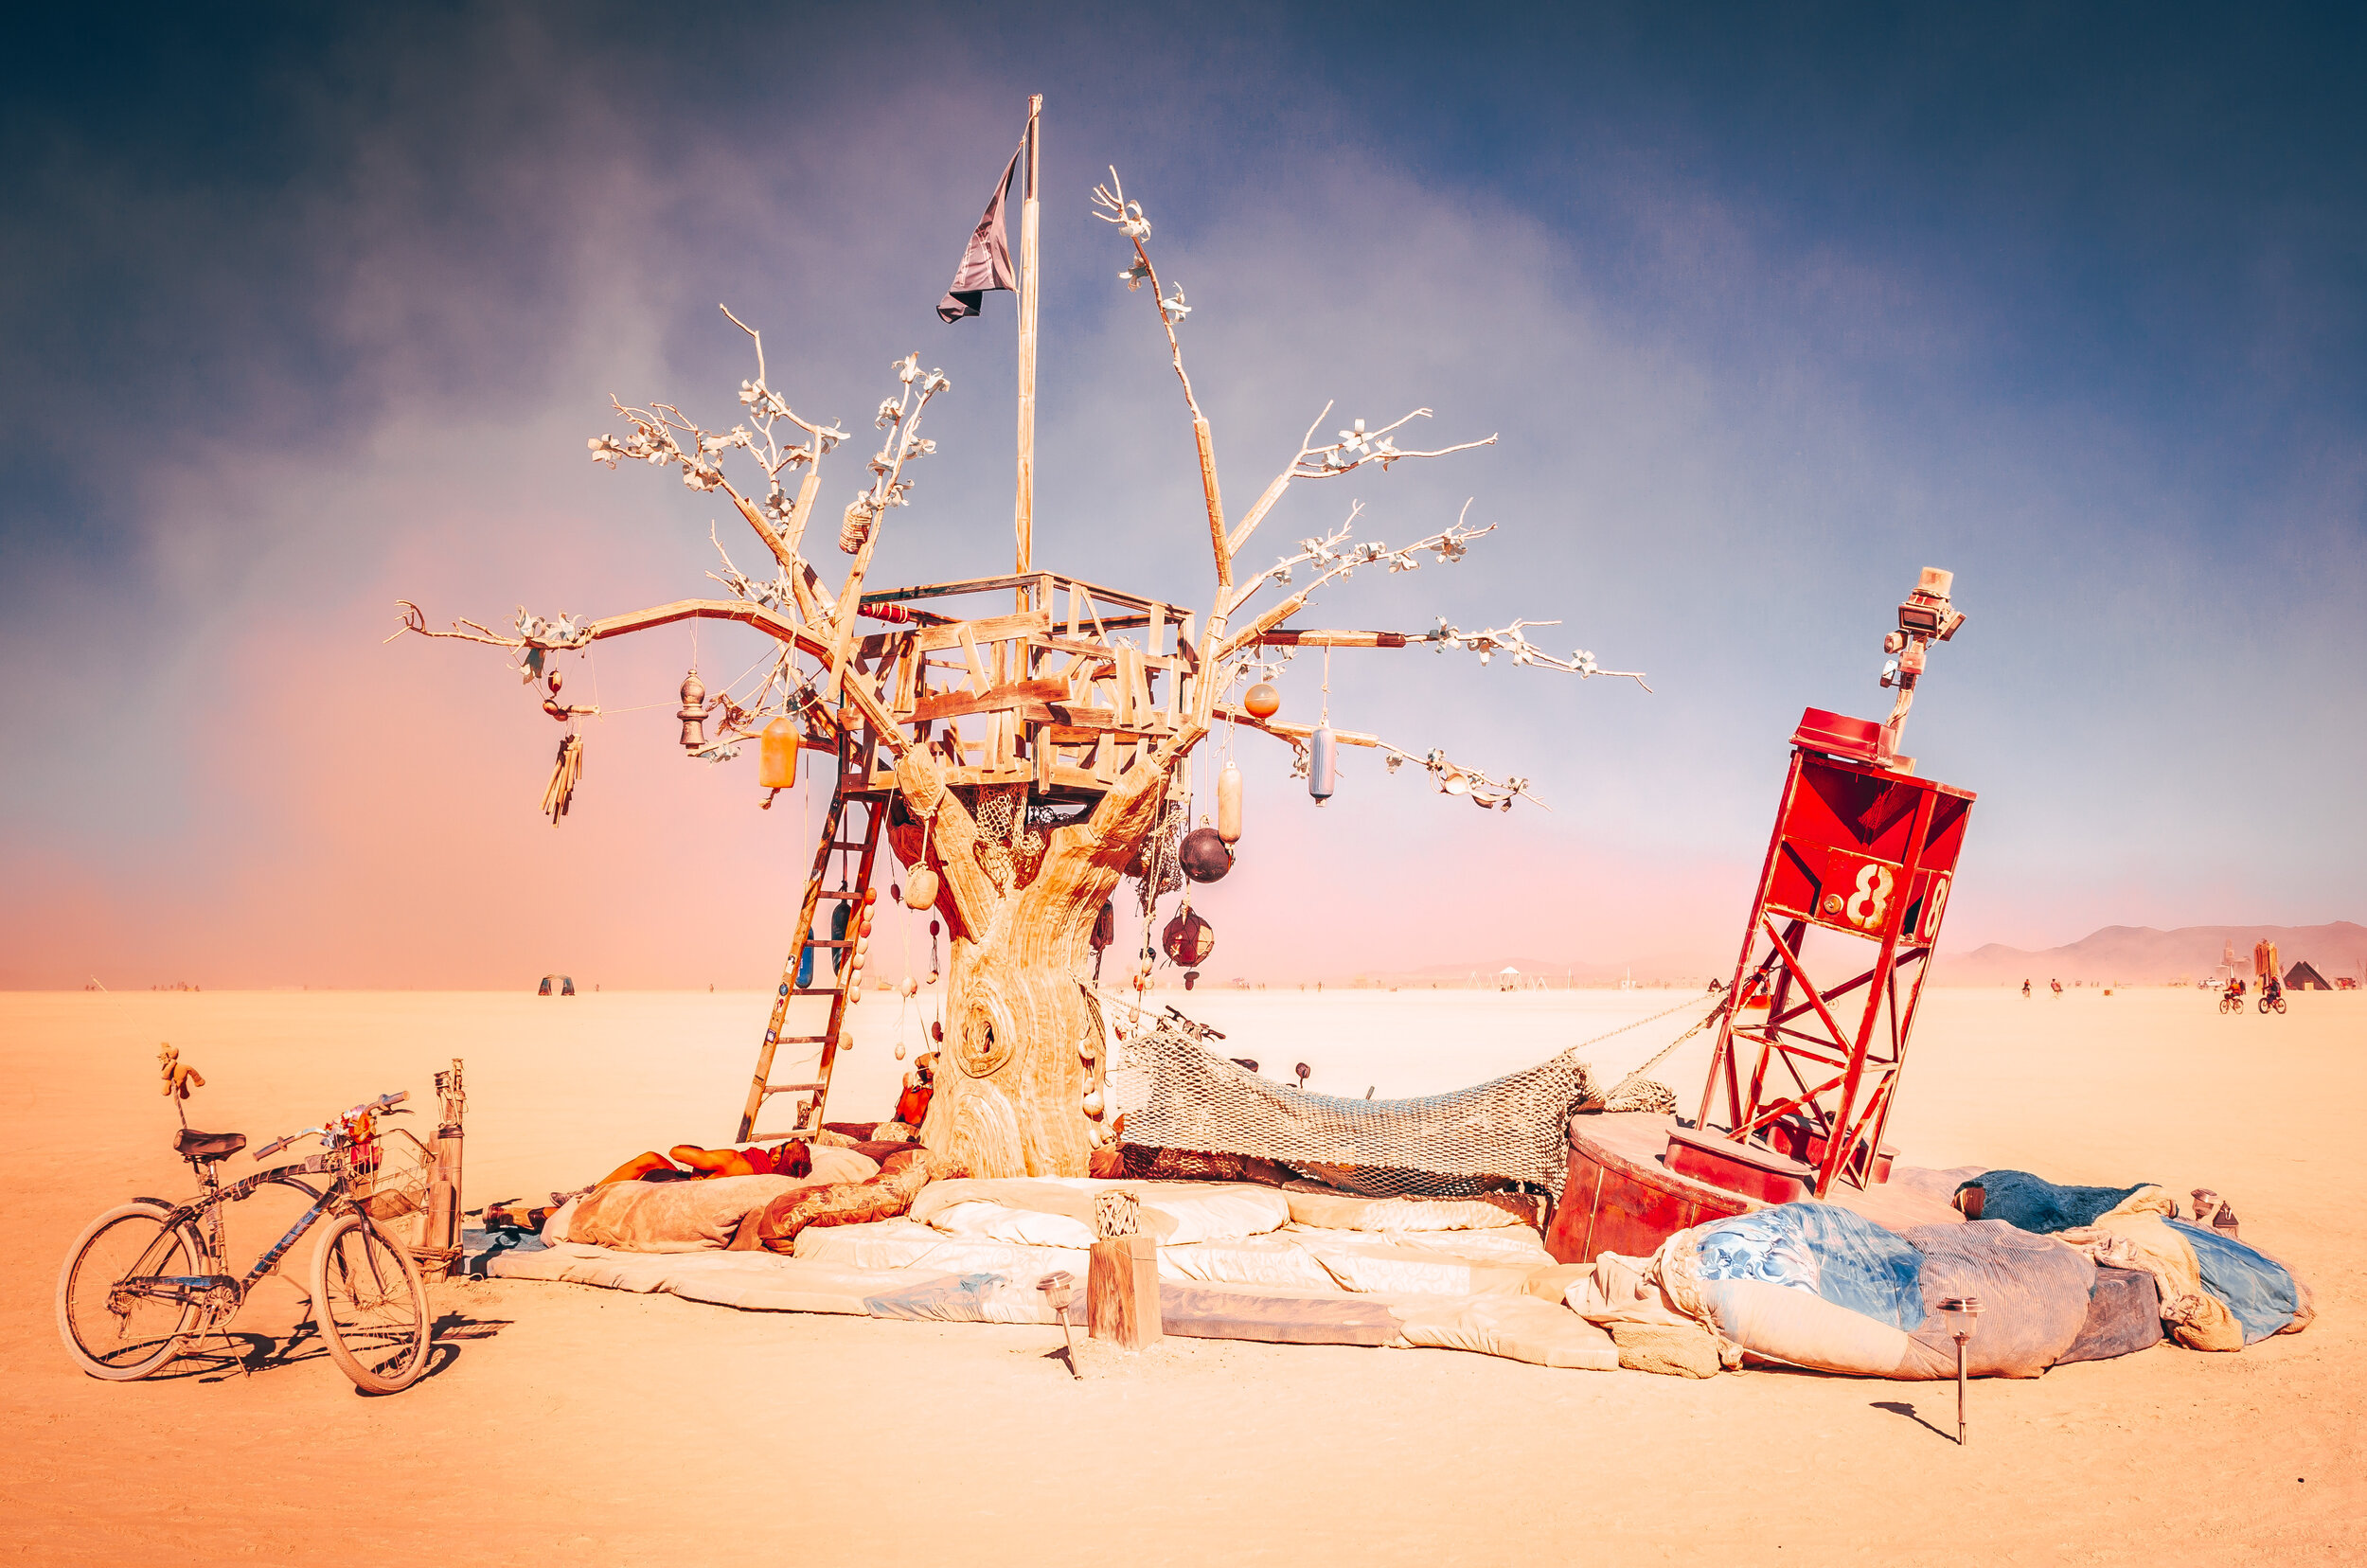 Burning Man 2019 - Island of Lost Buoys